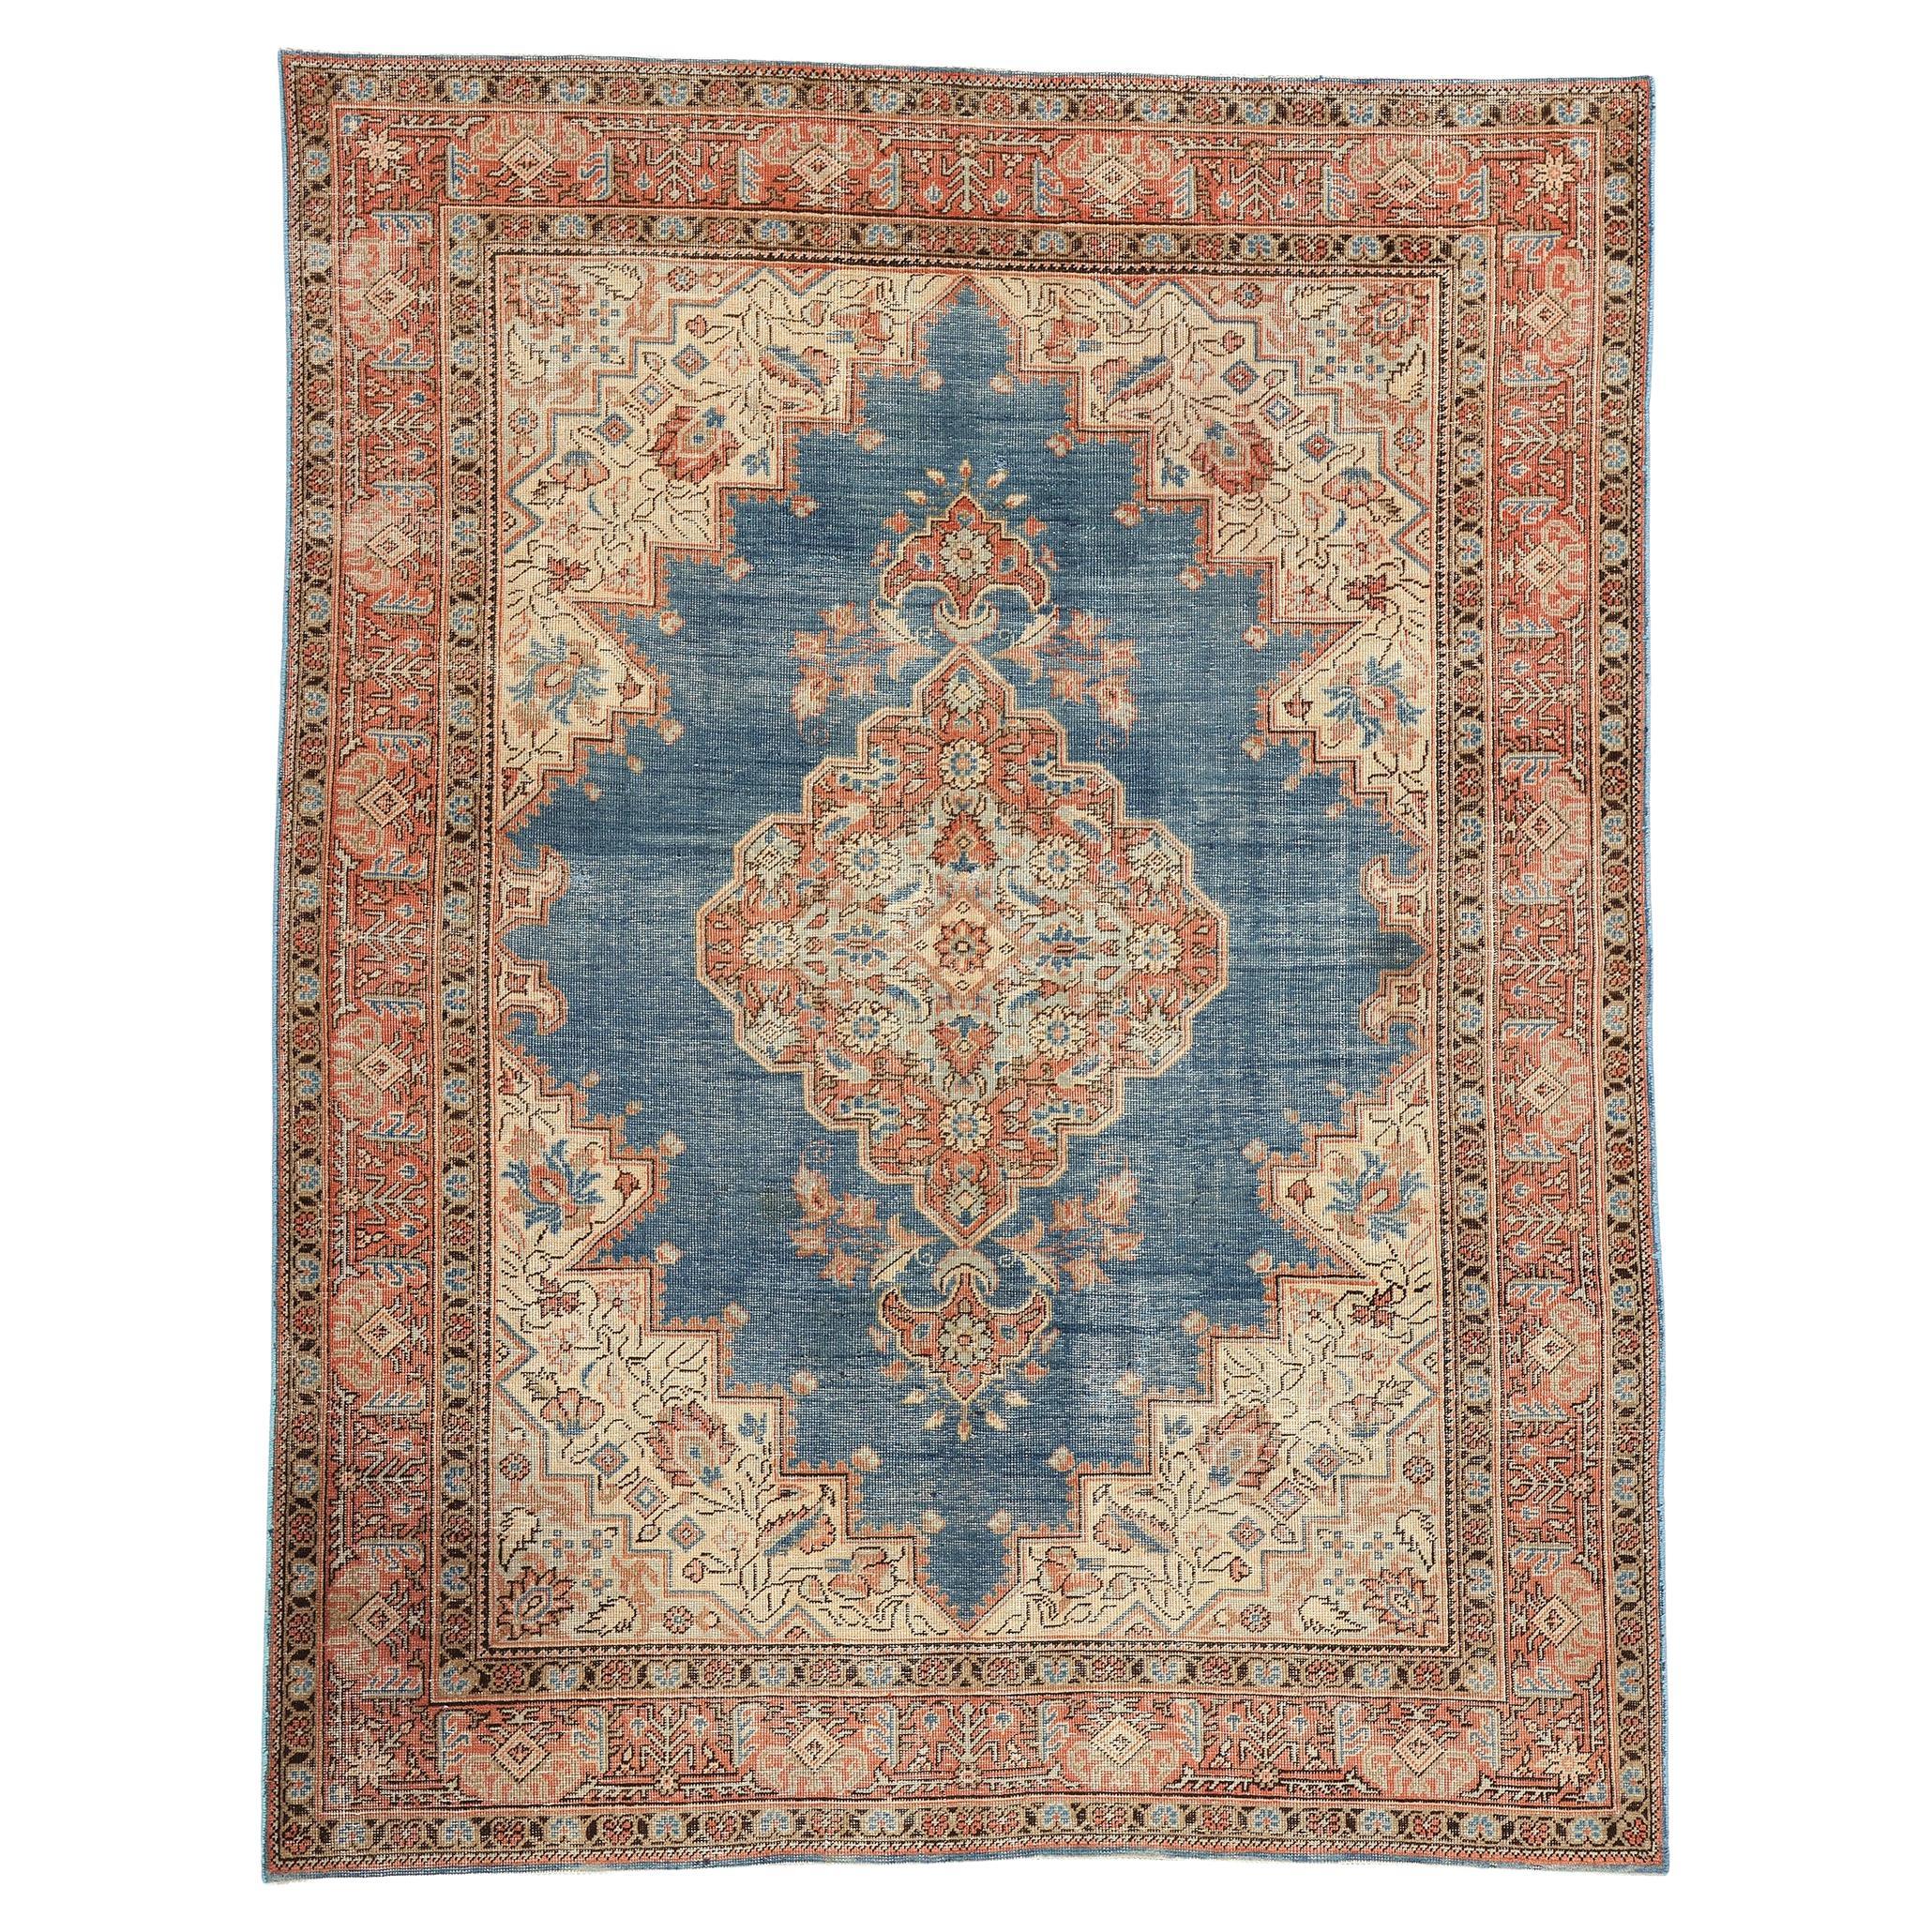 Gealterter antiker persischer Täbris-Teppich